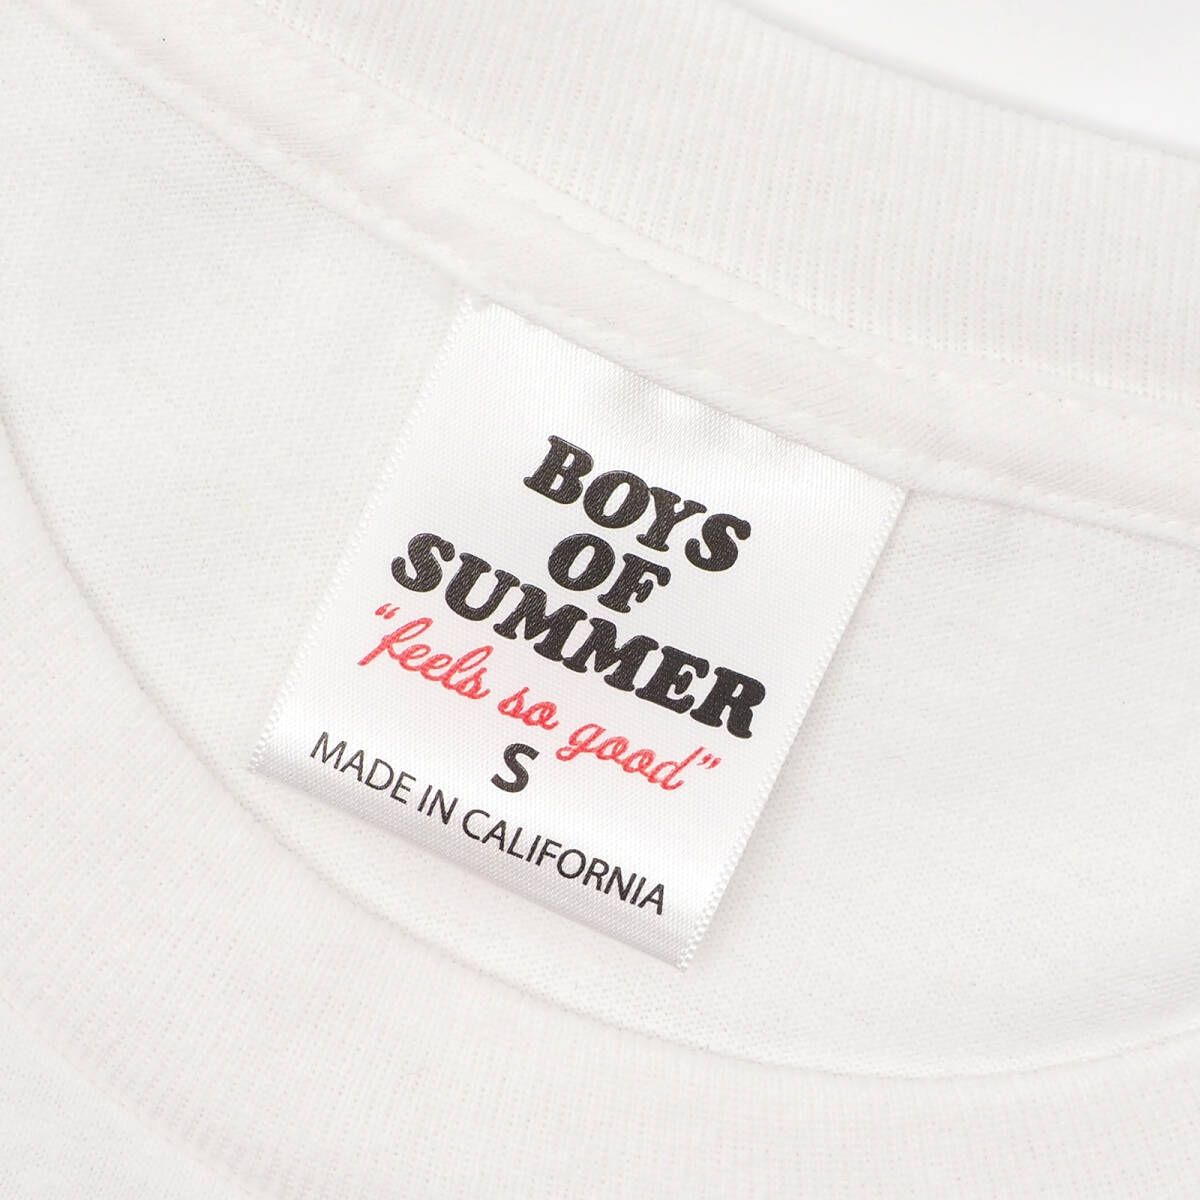 Boys Of Summer - Auto Shade T-Shirt 白S ボーイズ オブ サマー - オート シェード ティーシャツ_画像3